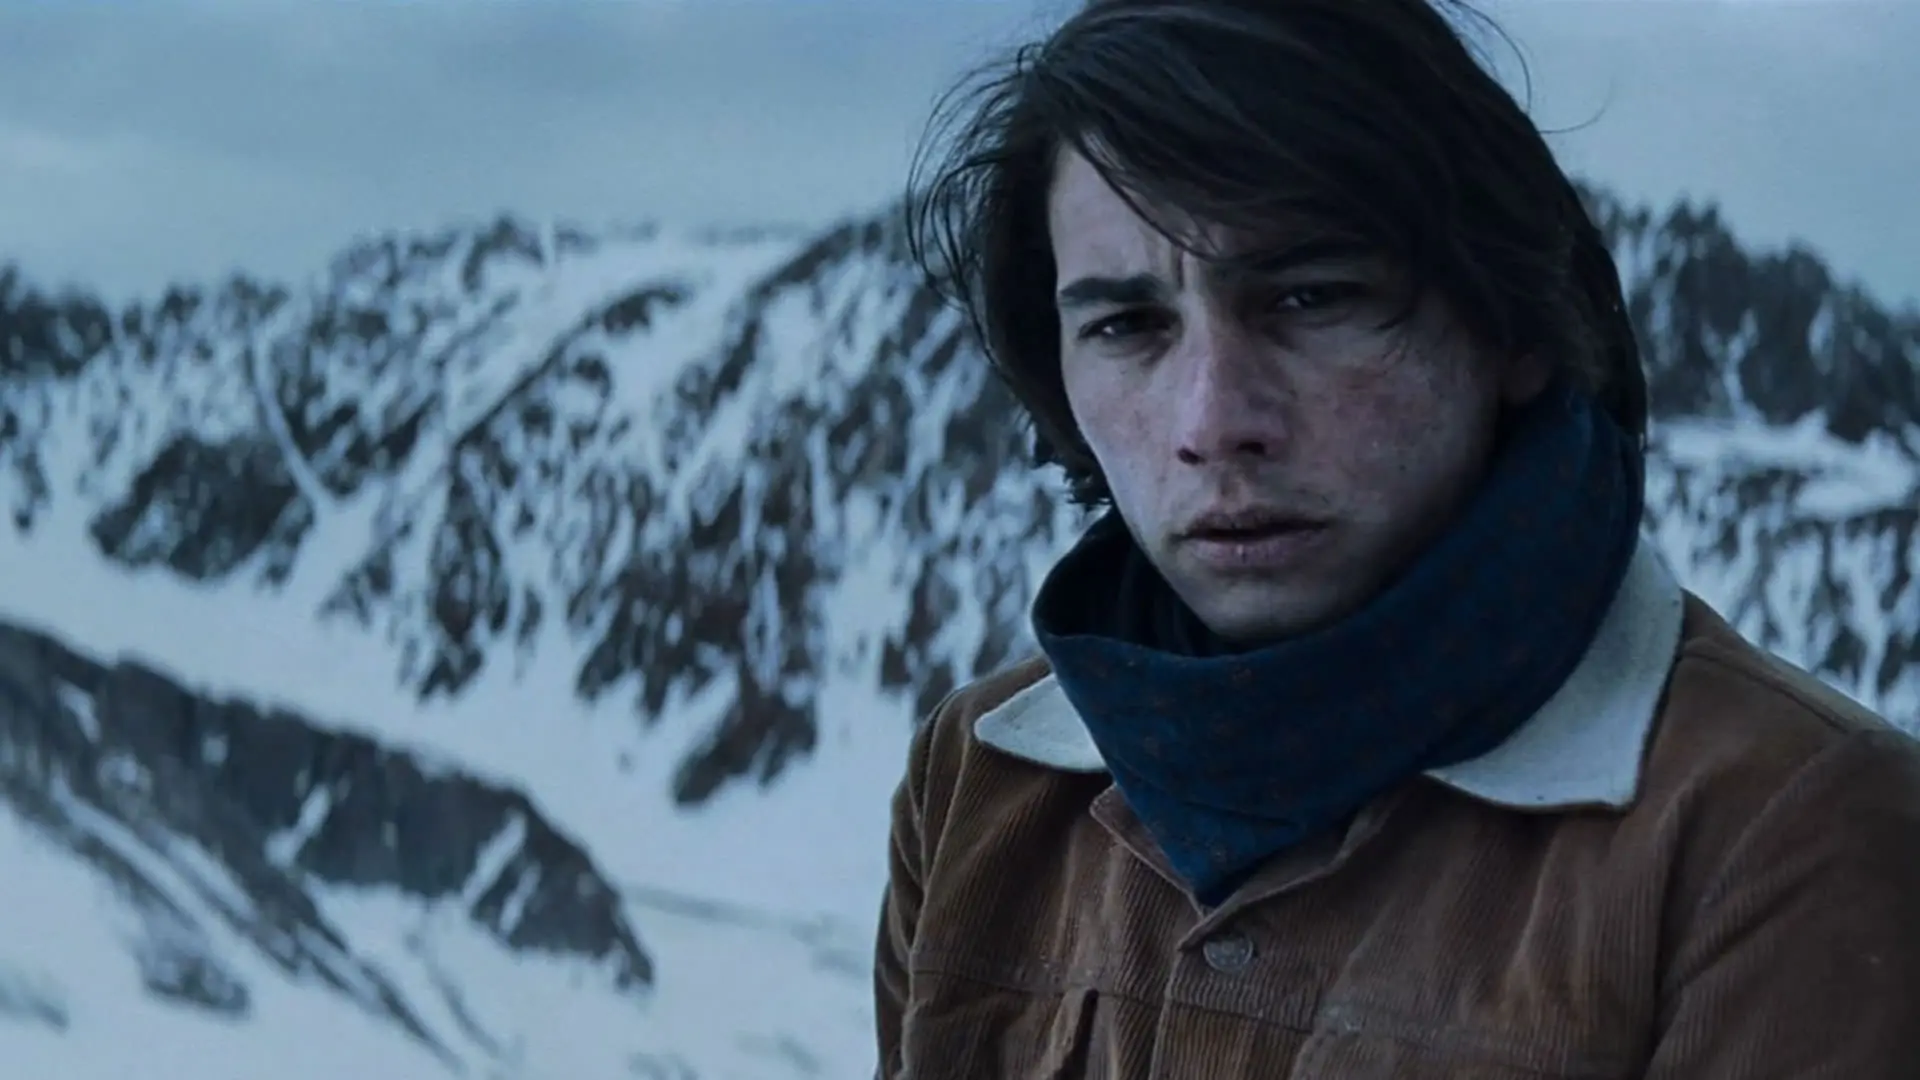 انزو ووگرینچیچ با لباسی گرم ایستاده در یک کوهستان برفی با چهره‌ای درهم به روبه‌رو نگاه می‌کند در نمایی از فیلم انجمن برف به کارگردانی جی ای بایونا